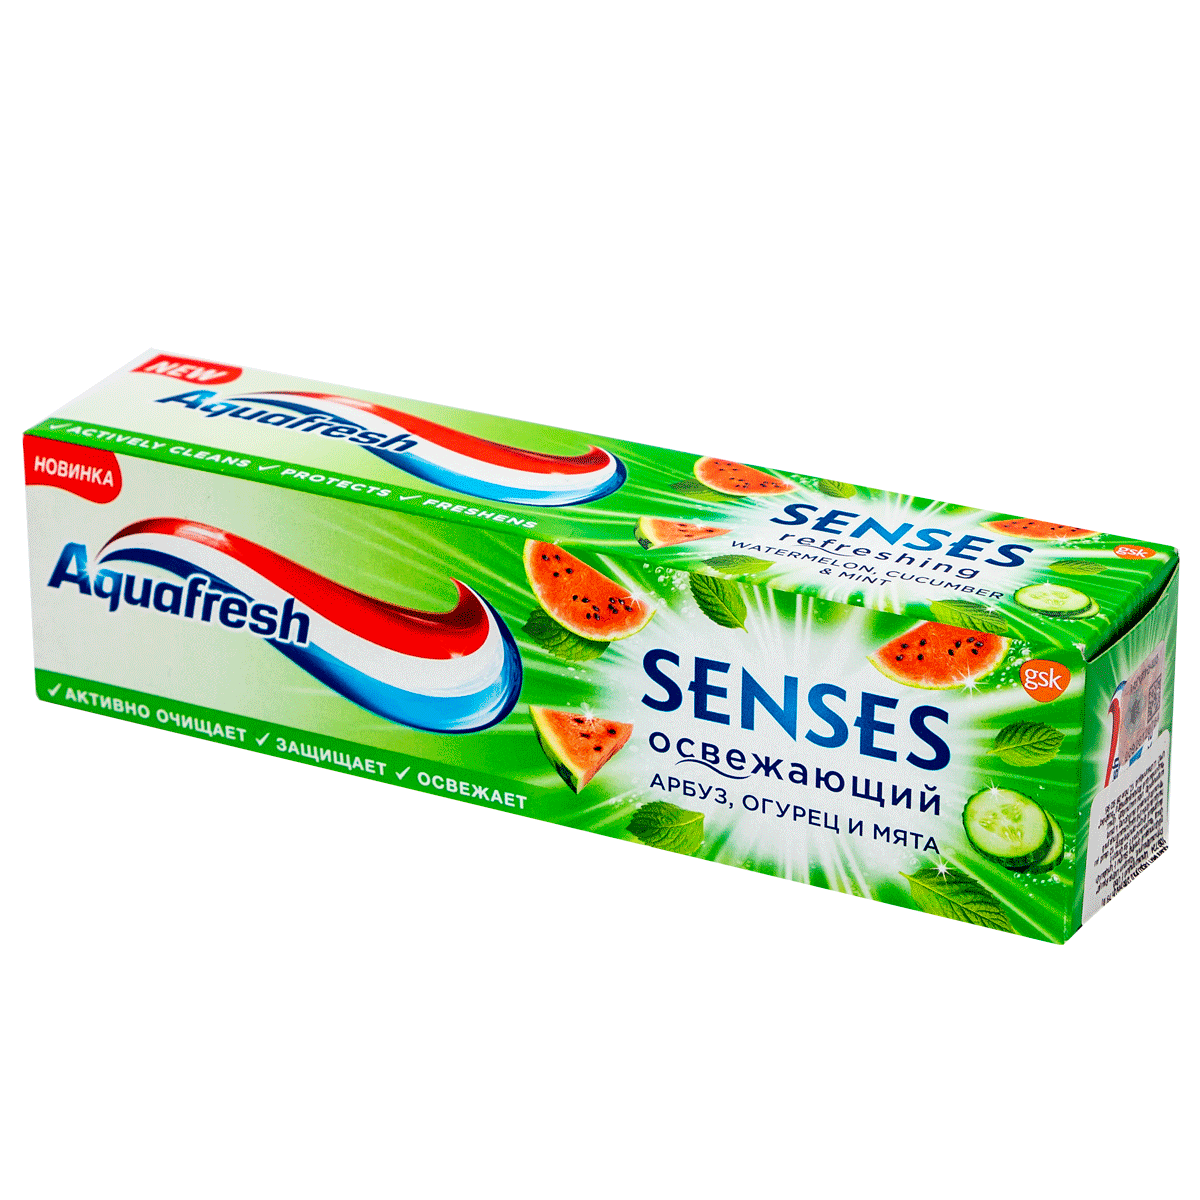 Ատամի մածուկ Aquafresh SENSES